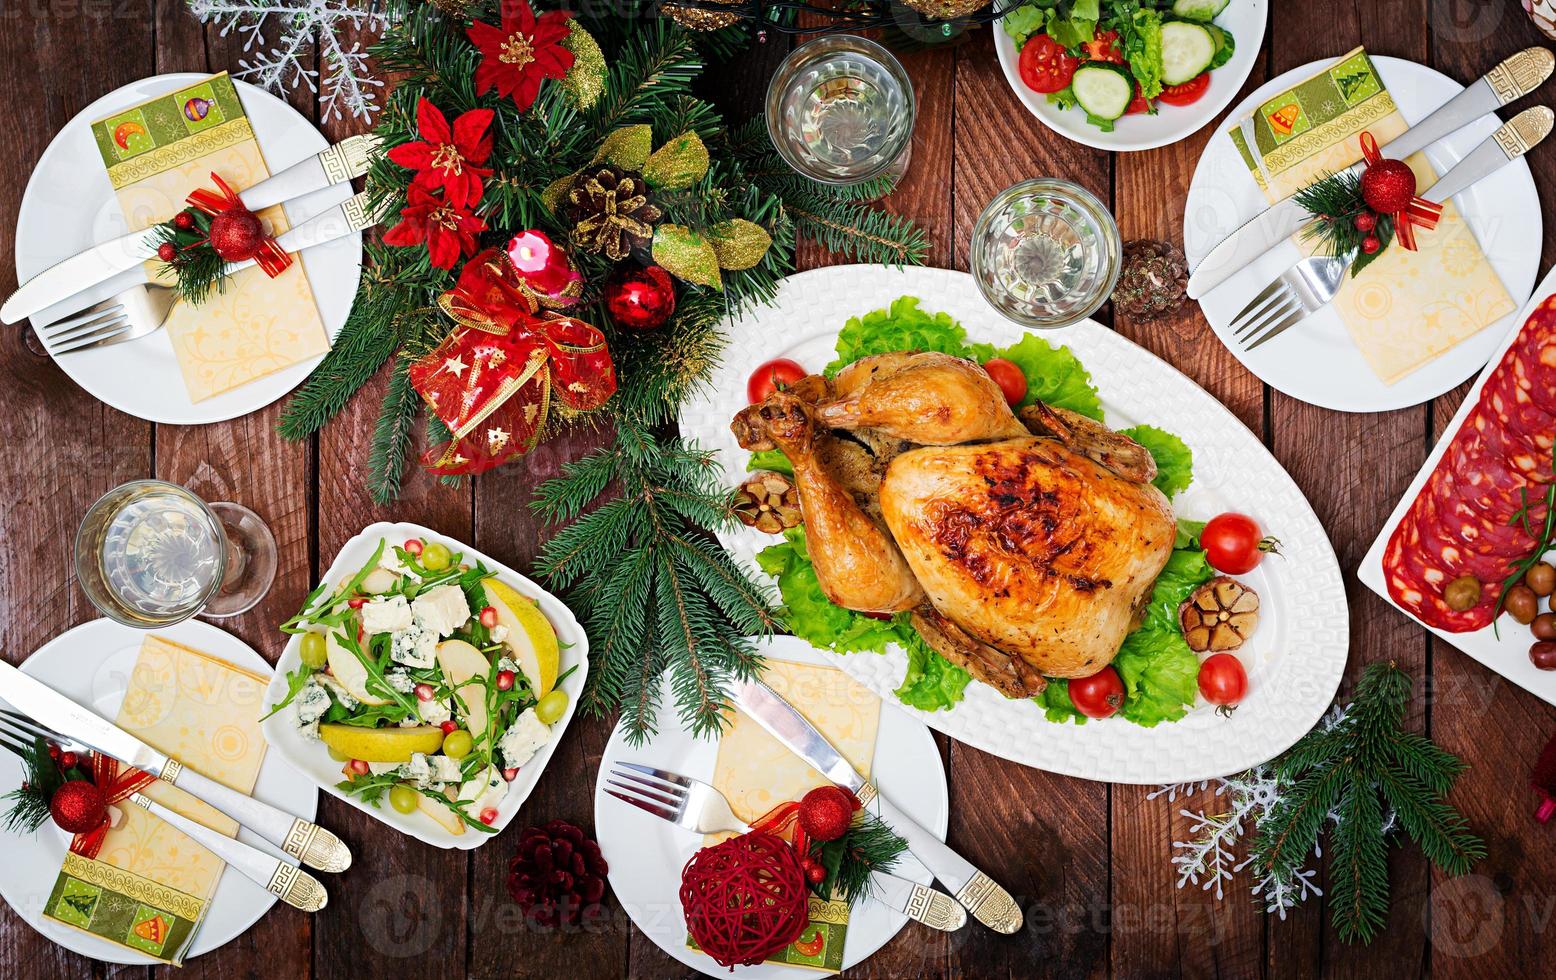 dinde ou poulet au four. la table de noël est servie avec une dinde, décorée de guirlandes lumineuses et de bougies. poulet frit, table. dîner de Noël. mise à plat. vue de dessus photo